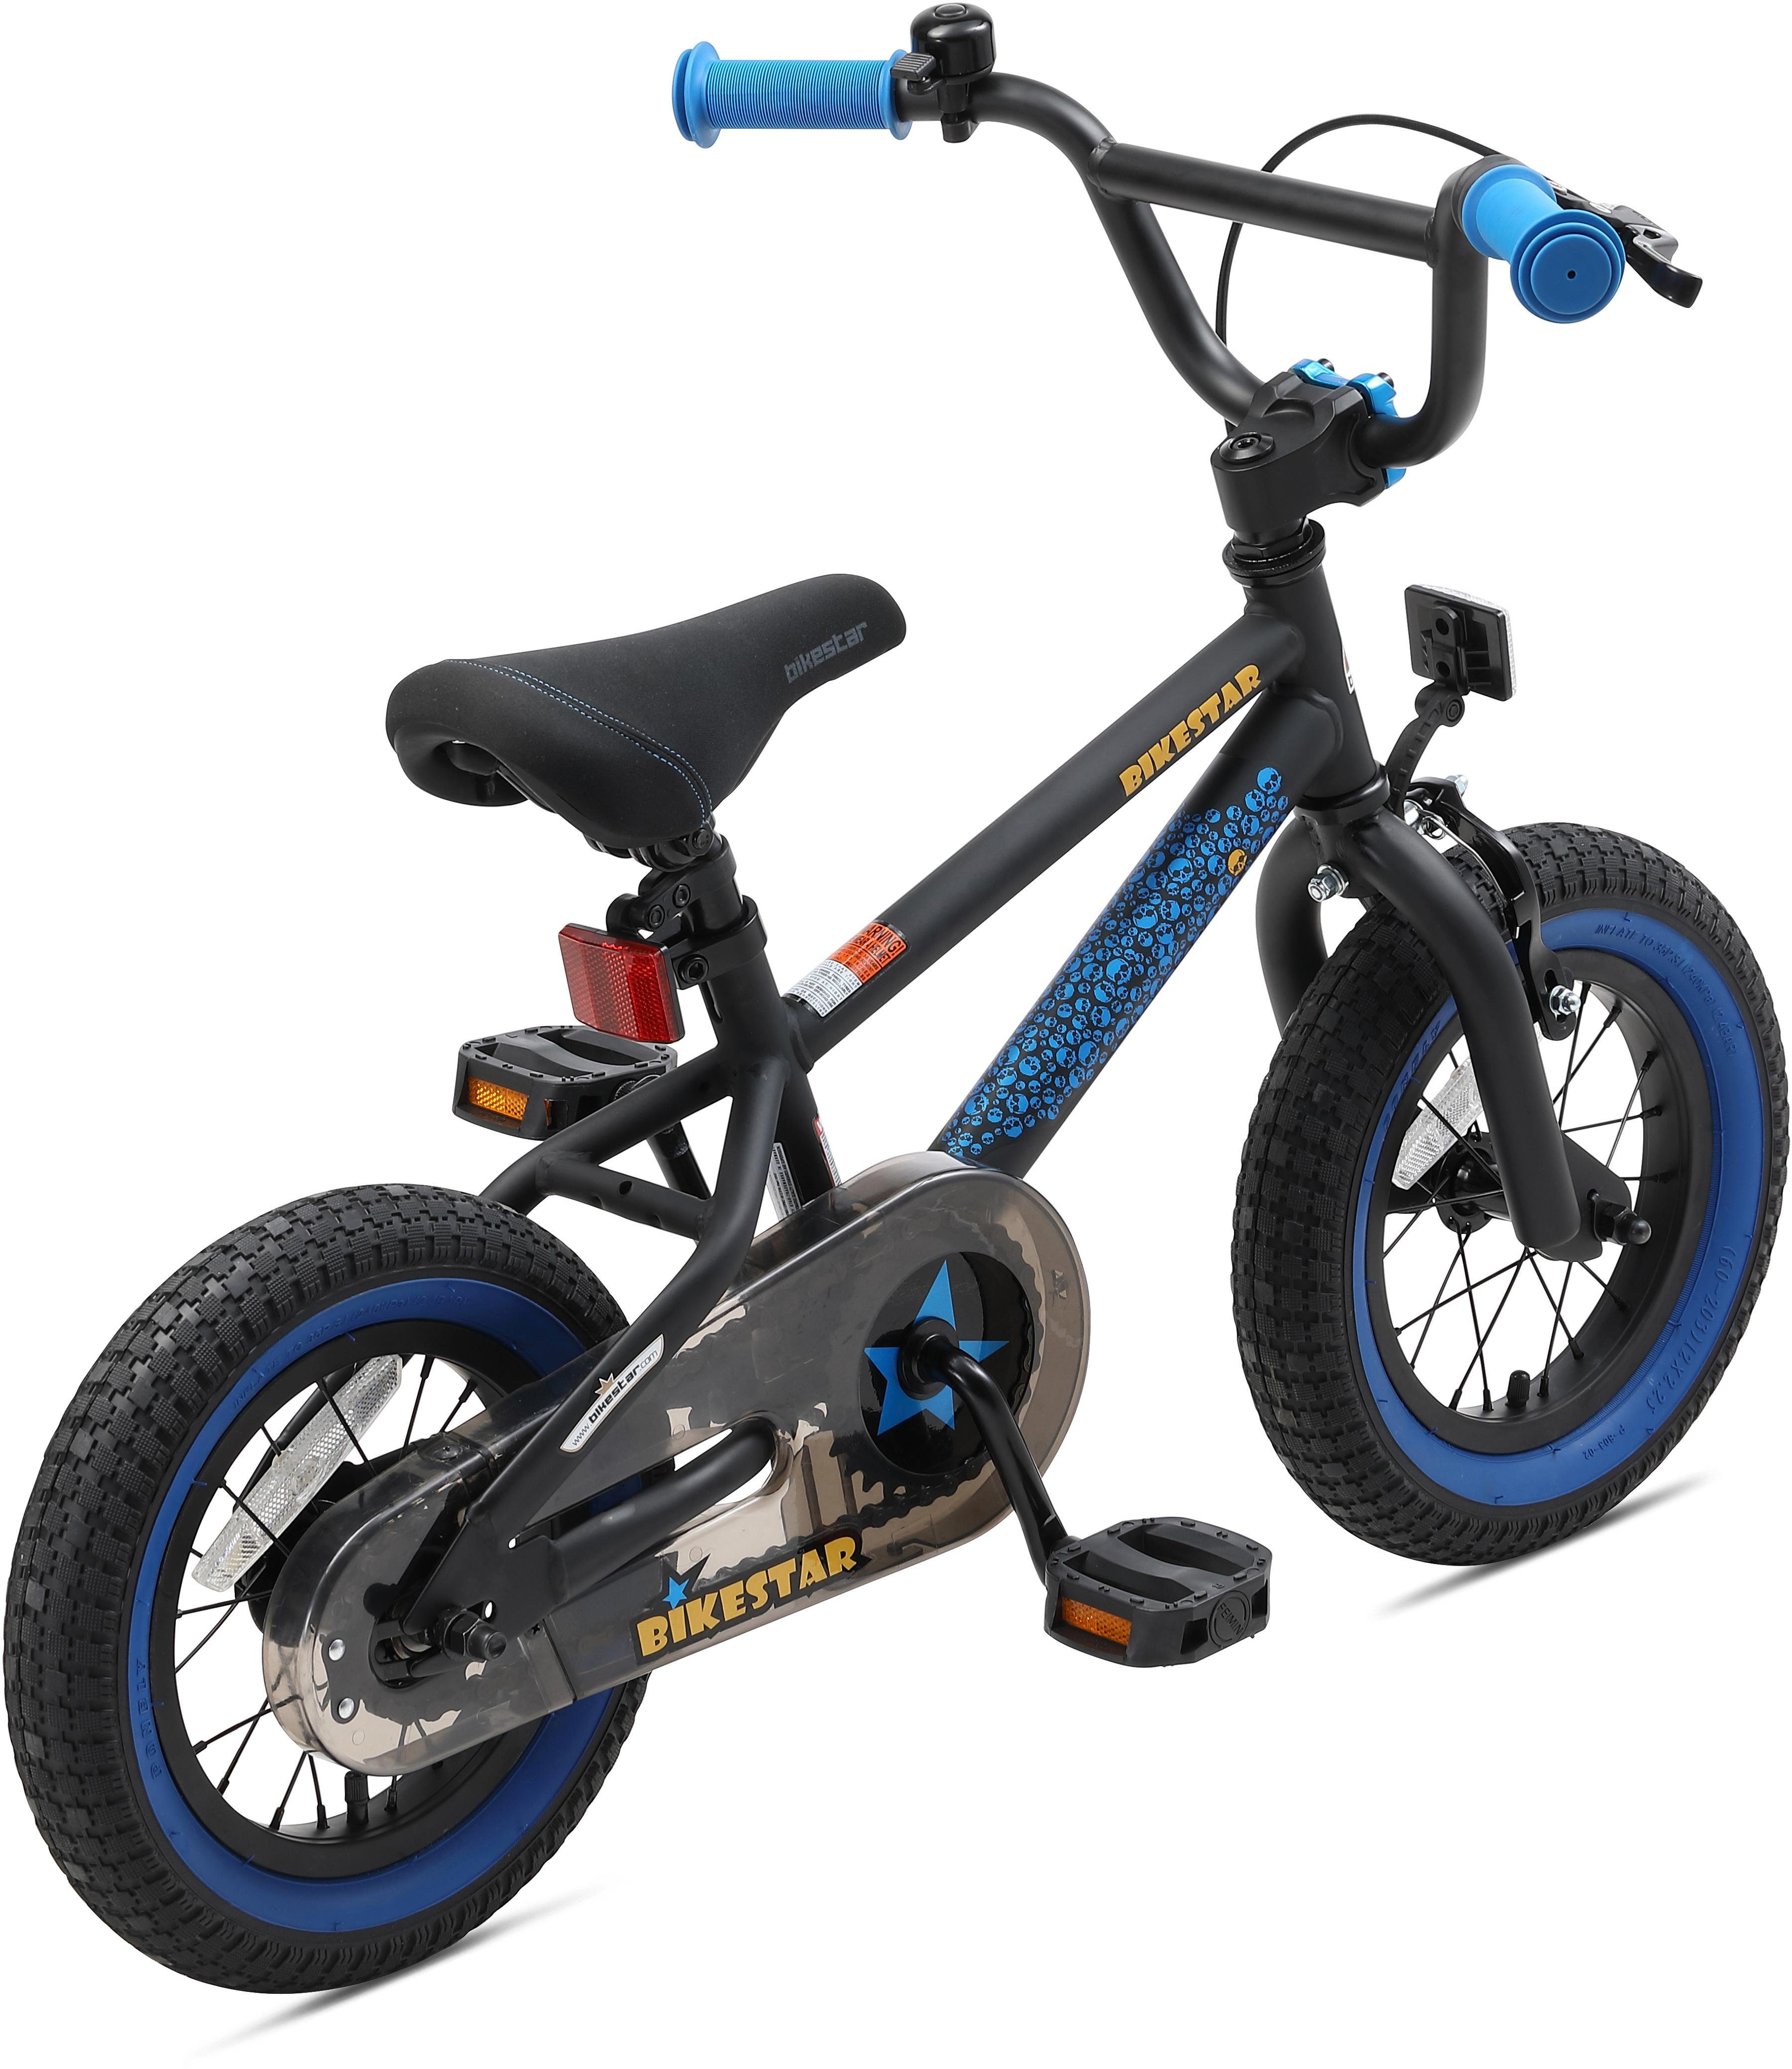 BMX-Rad, 1 Gang Bikestar